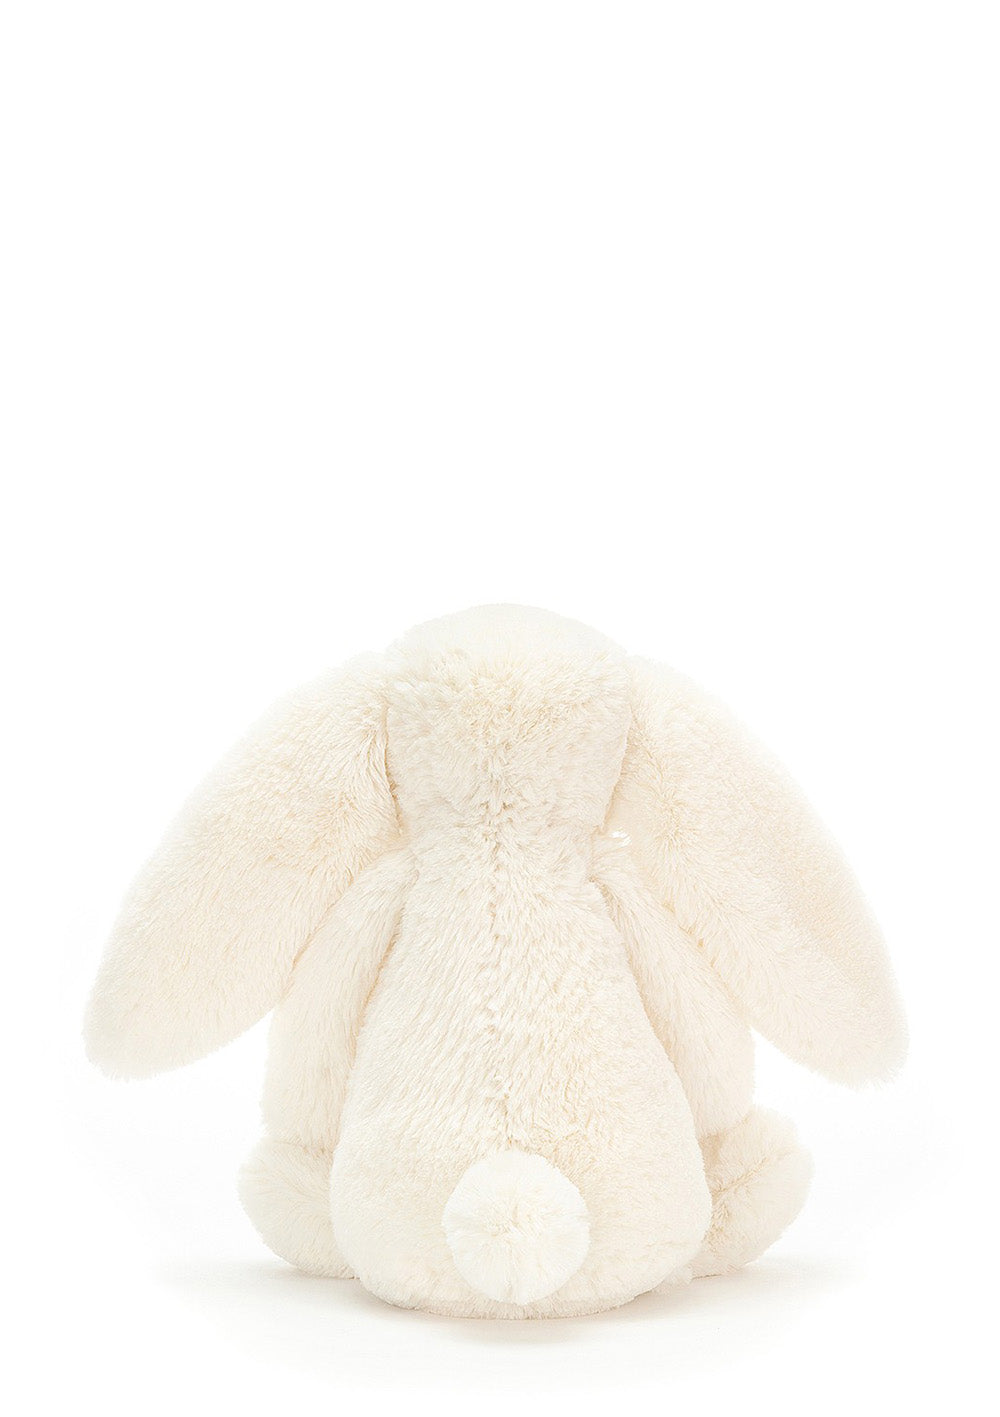 Hase Kuscheltier 'Bashful Cream Bunny' tiny